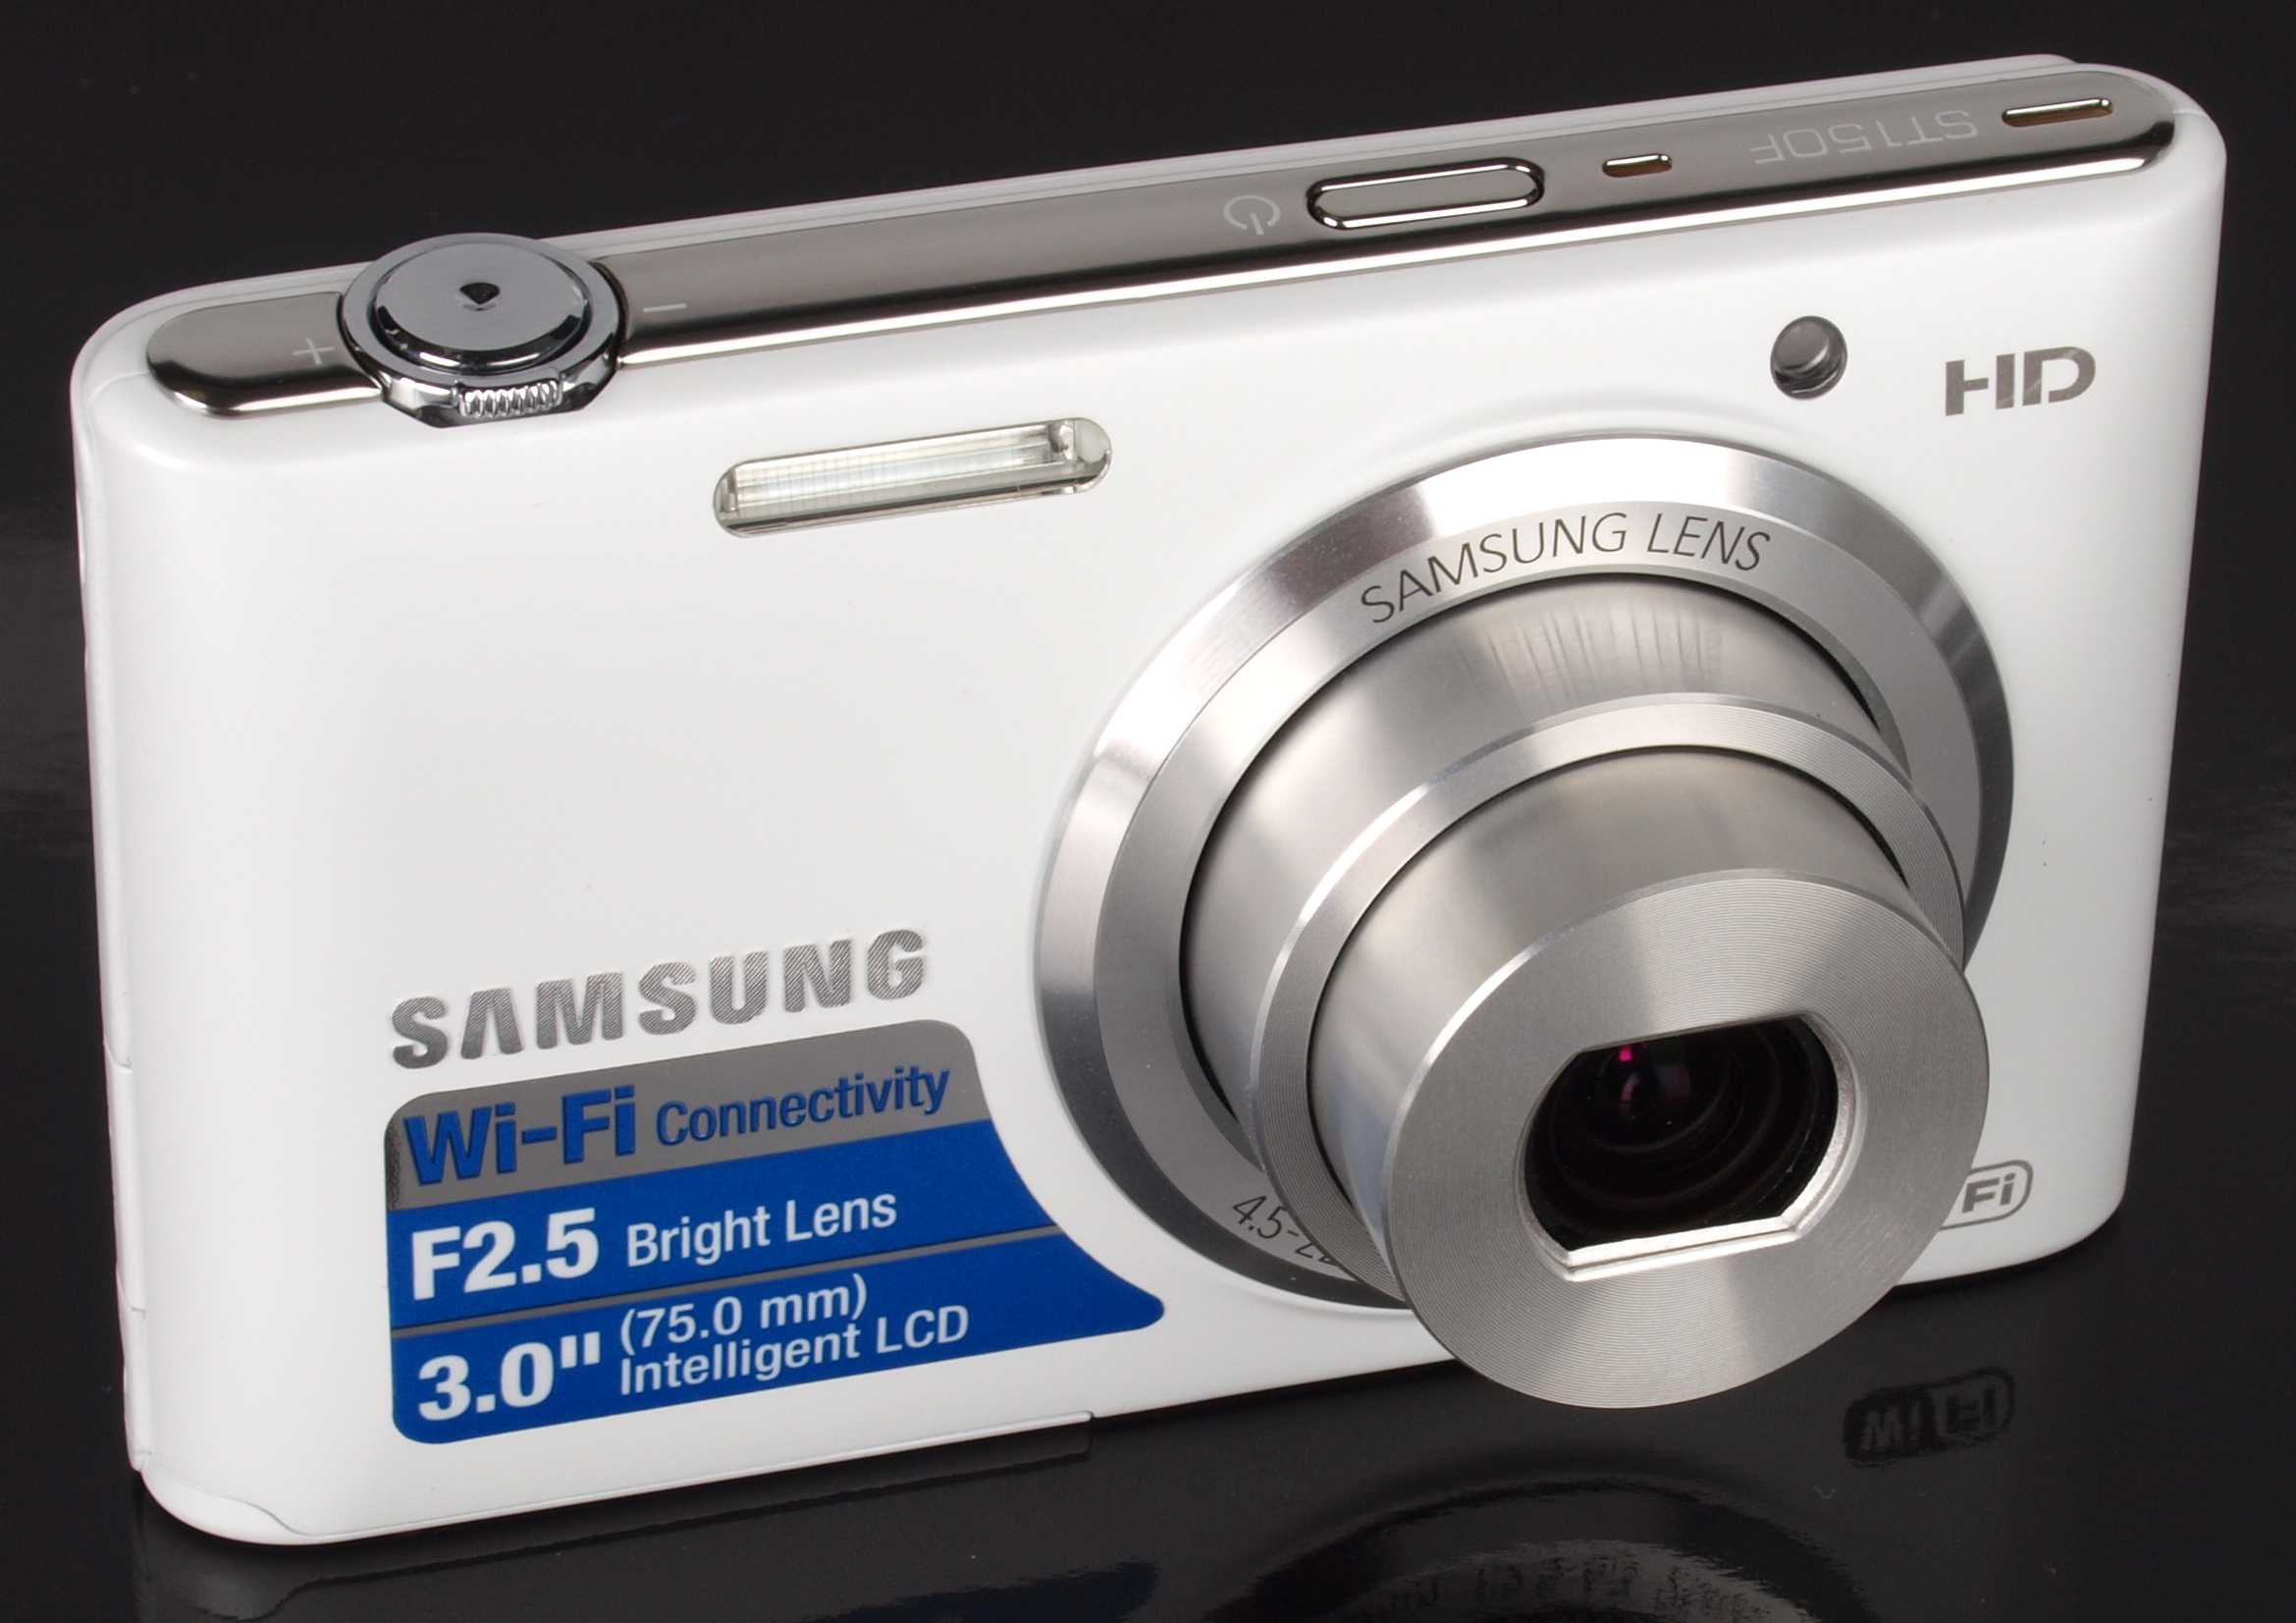 Samsung st150f (белый) - купить , скидки, цена, отзывы, обзор, характеристики - фотоаппараты цифровые